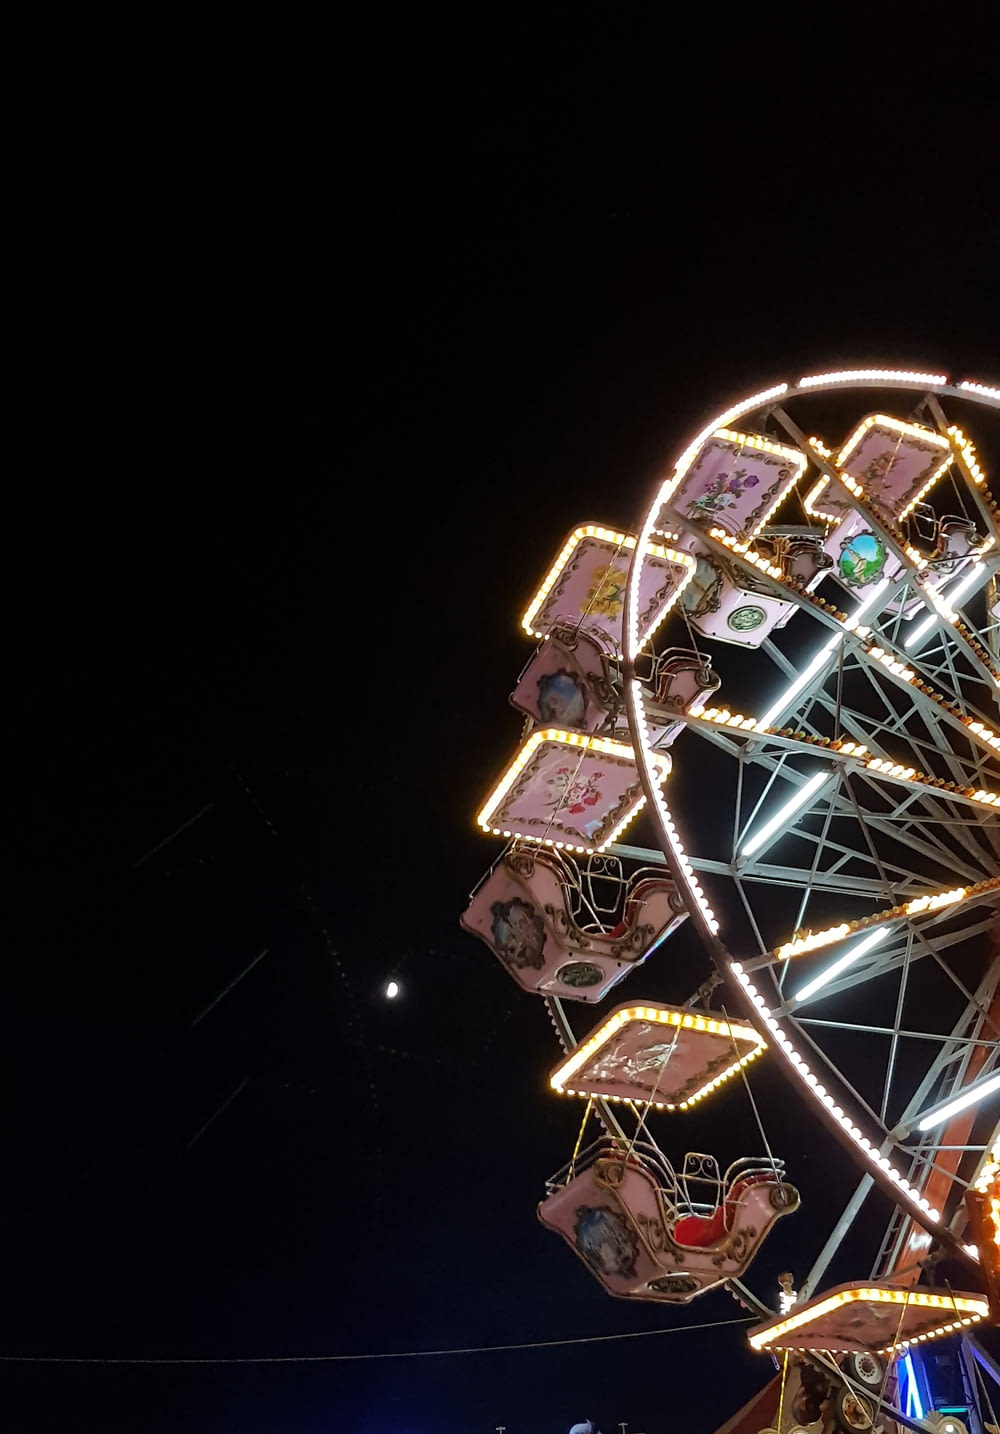 lit ferris wheel during night